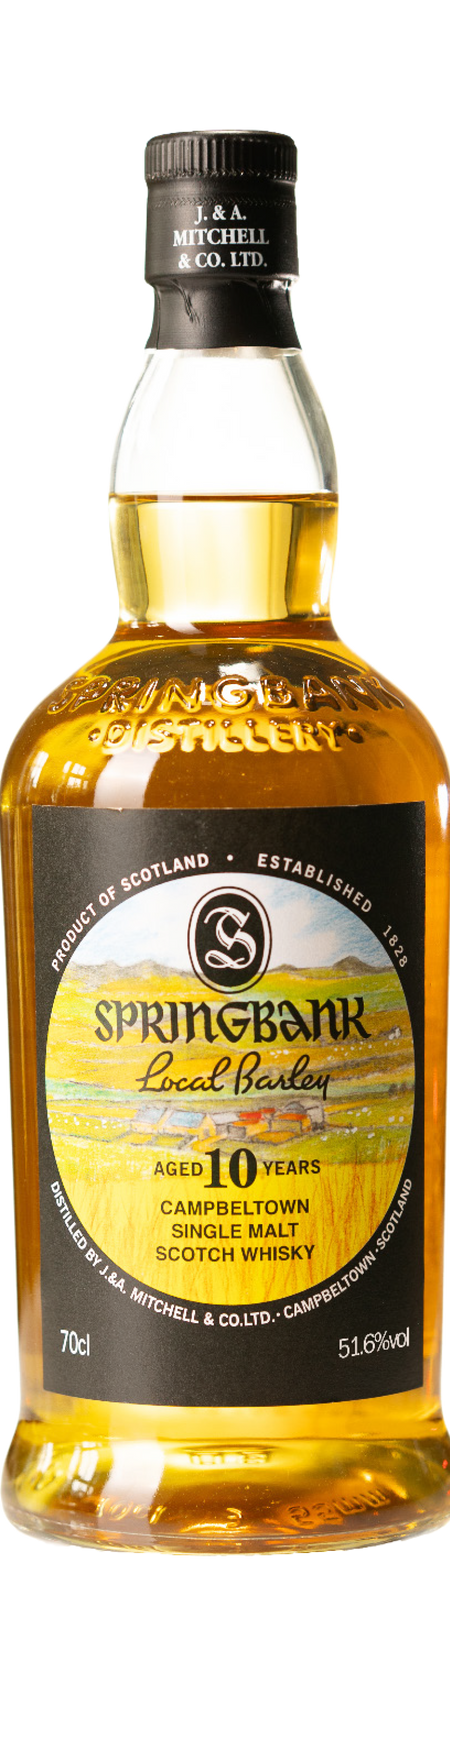 Springbank, Hazelburn, Longrow. Eine Destillerie, drei Whiskys, einzigartig im Geschmack